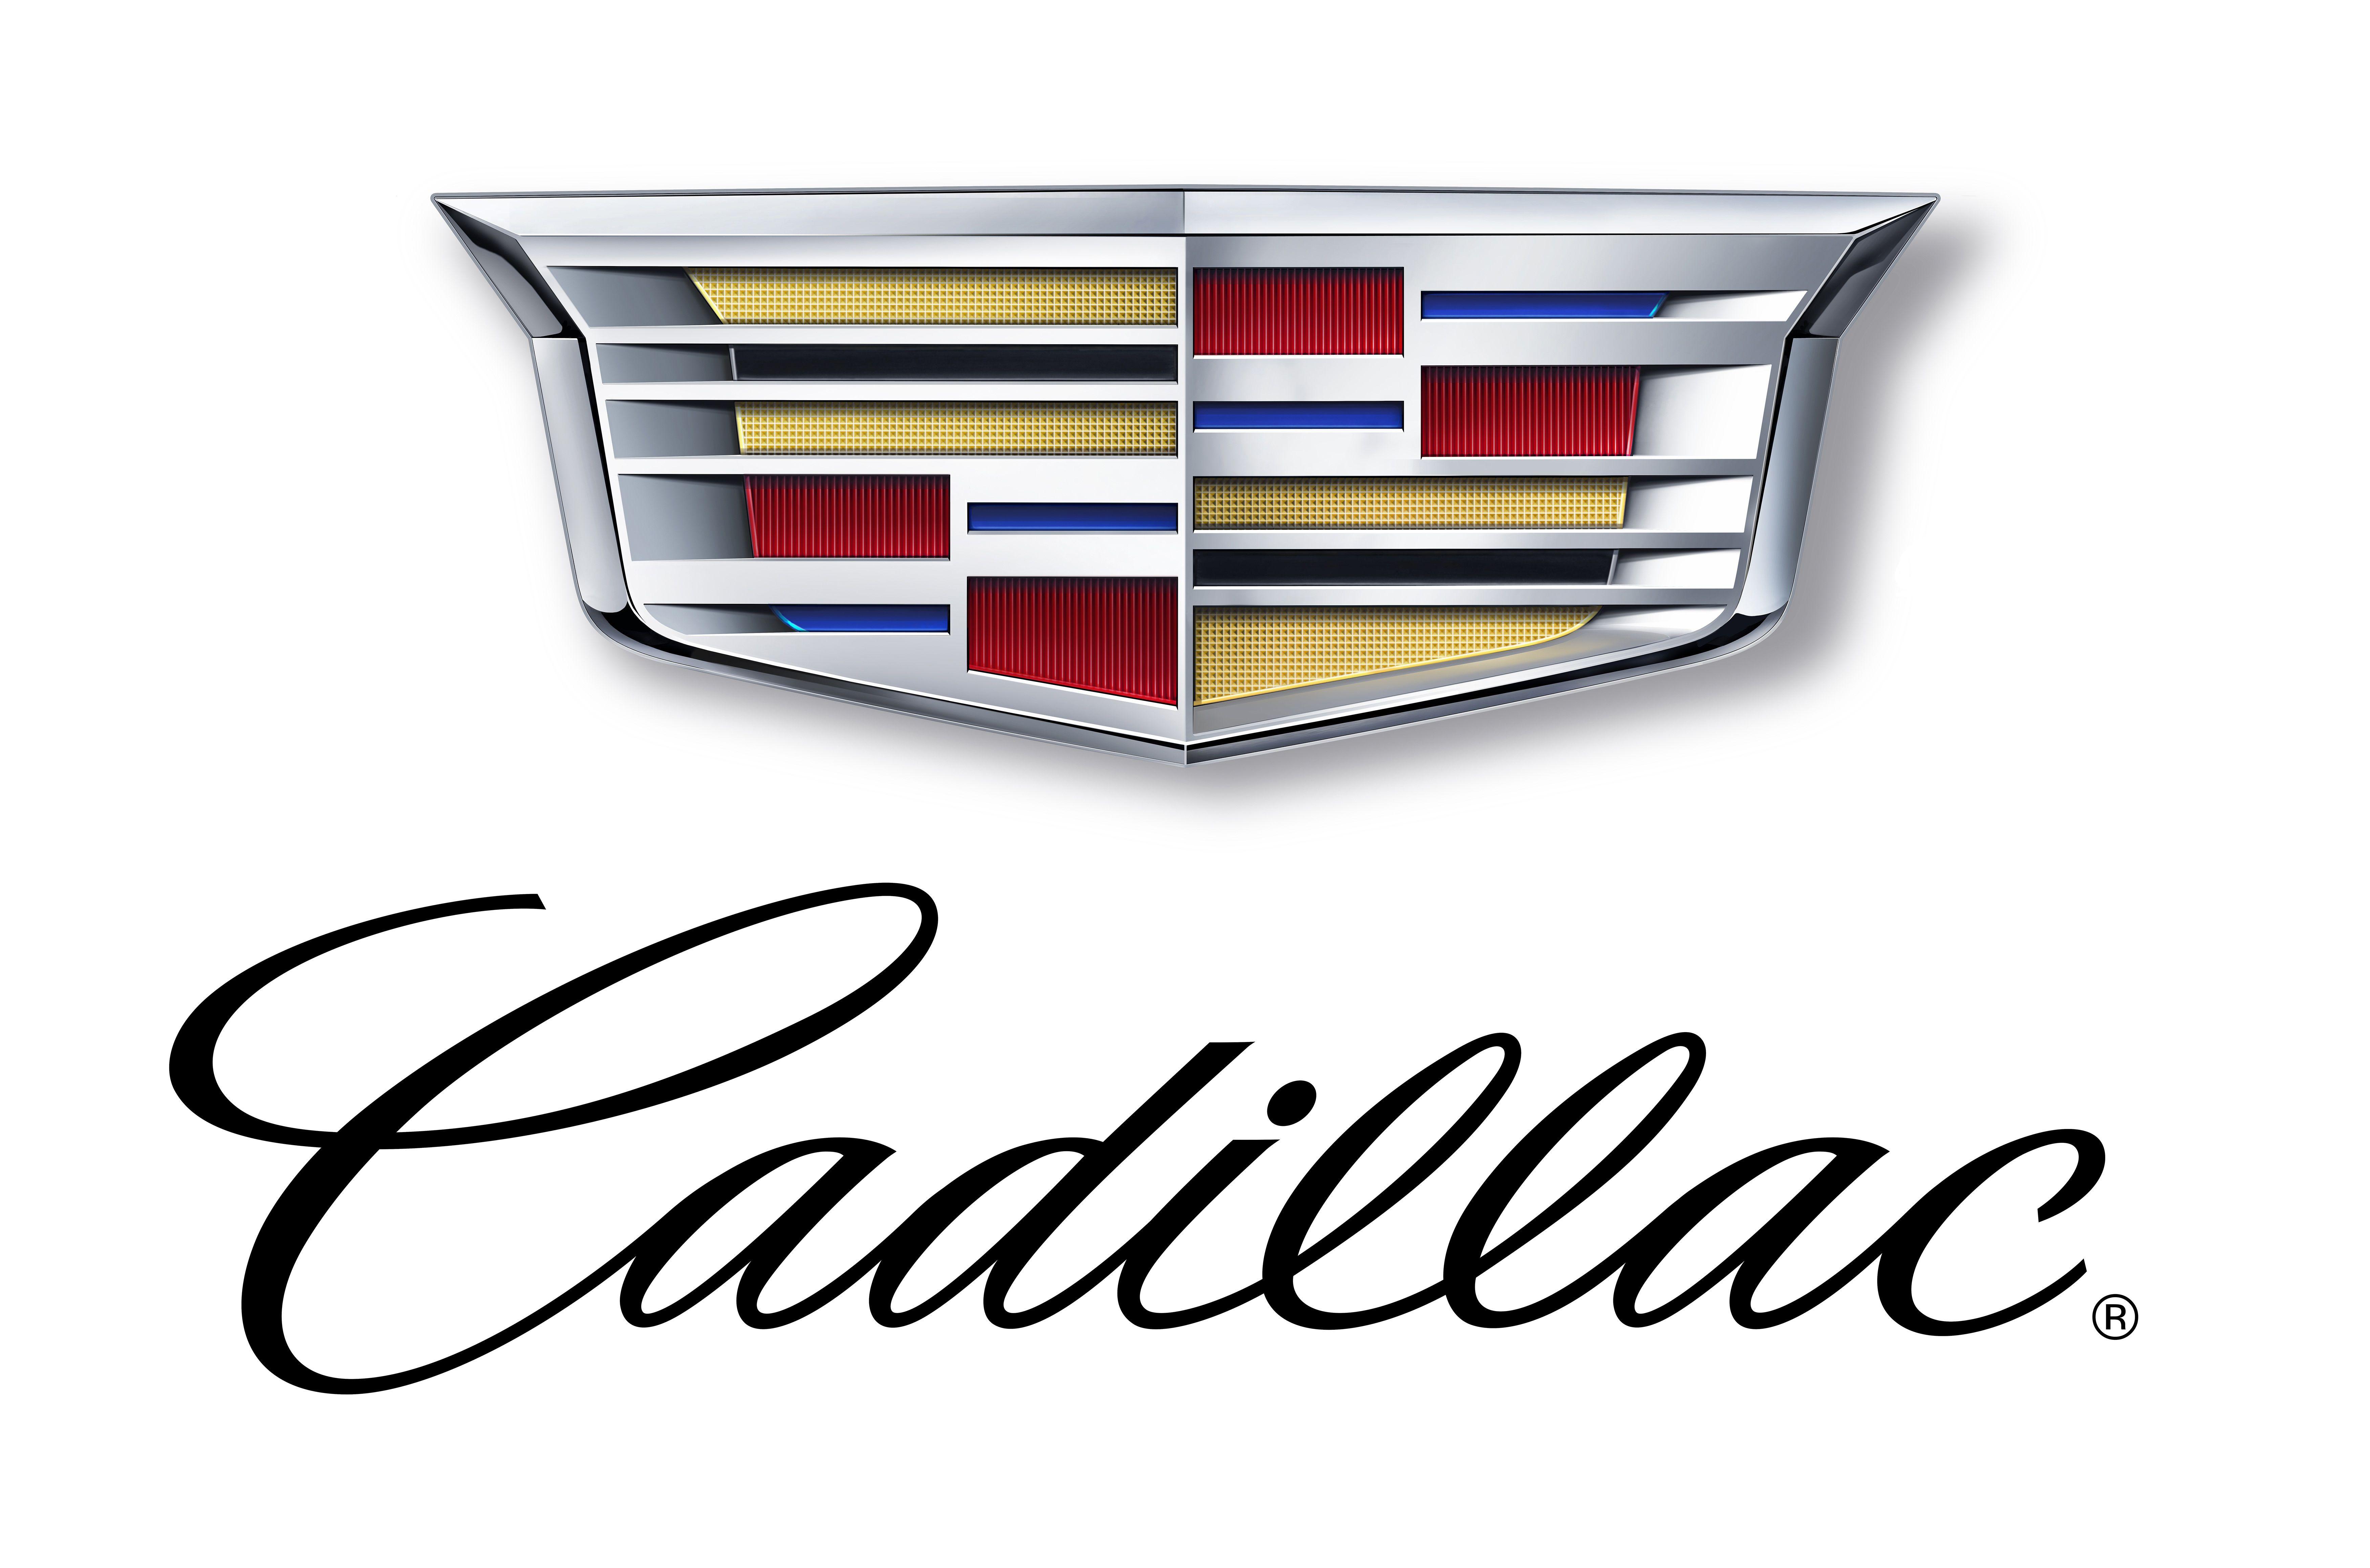 2014 Cadillac Logo - Upcoming Top End Product Named Cadillac CT6